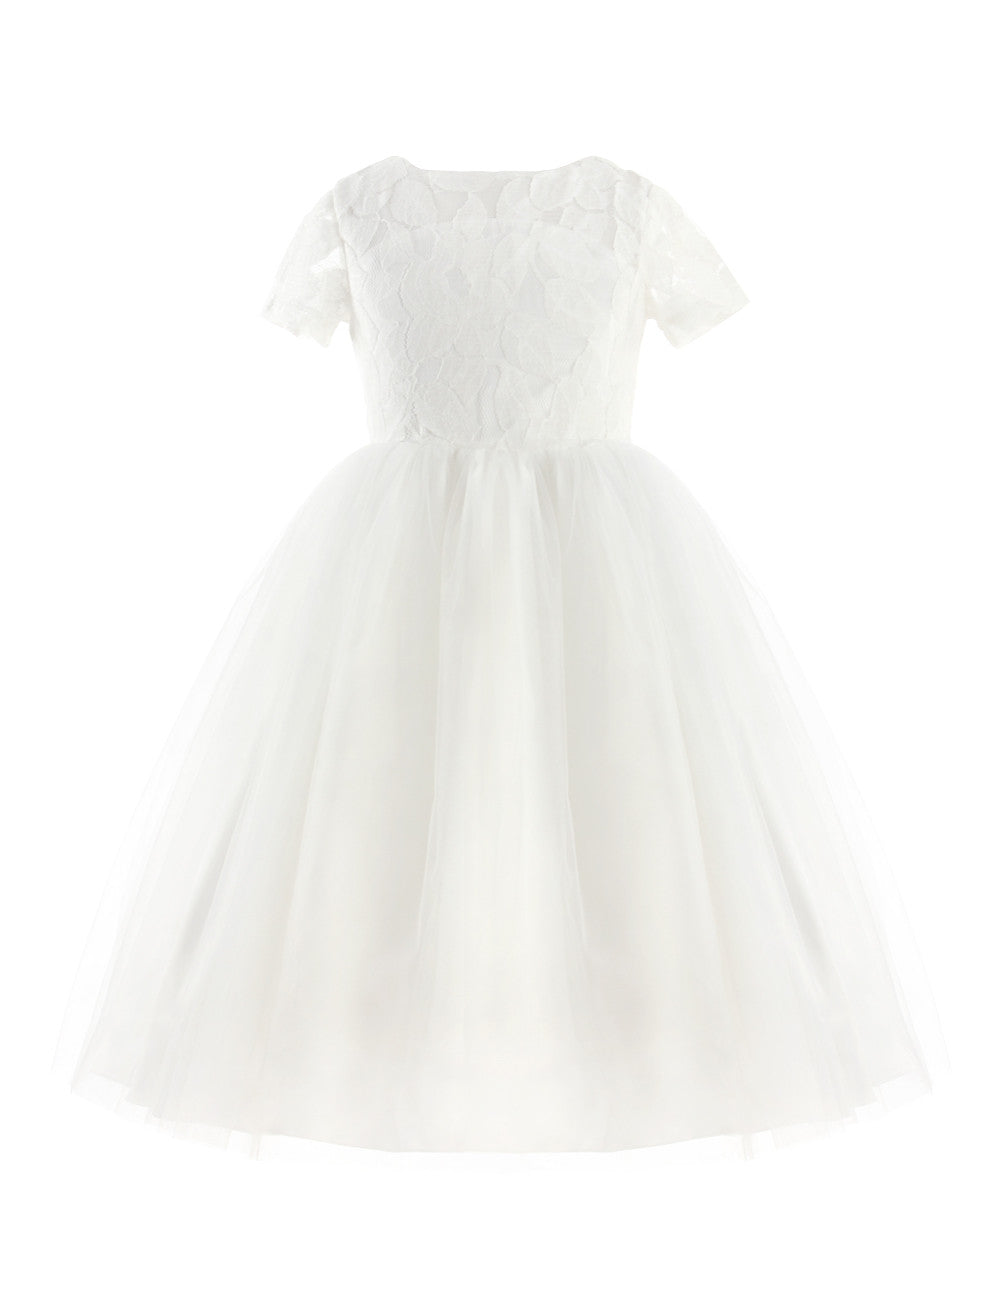 iiniim Brand New Flower Girl Dresses White Ivory Real Party Pageant Communion Dress Little Girls Kids Children Dress for Wedding